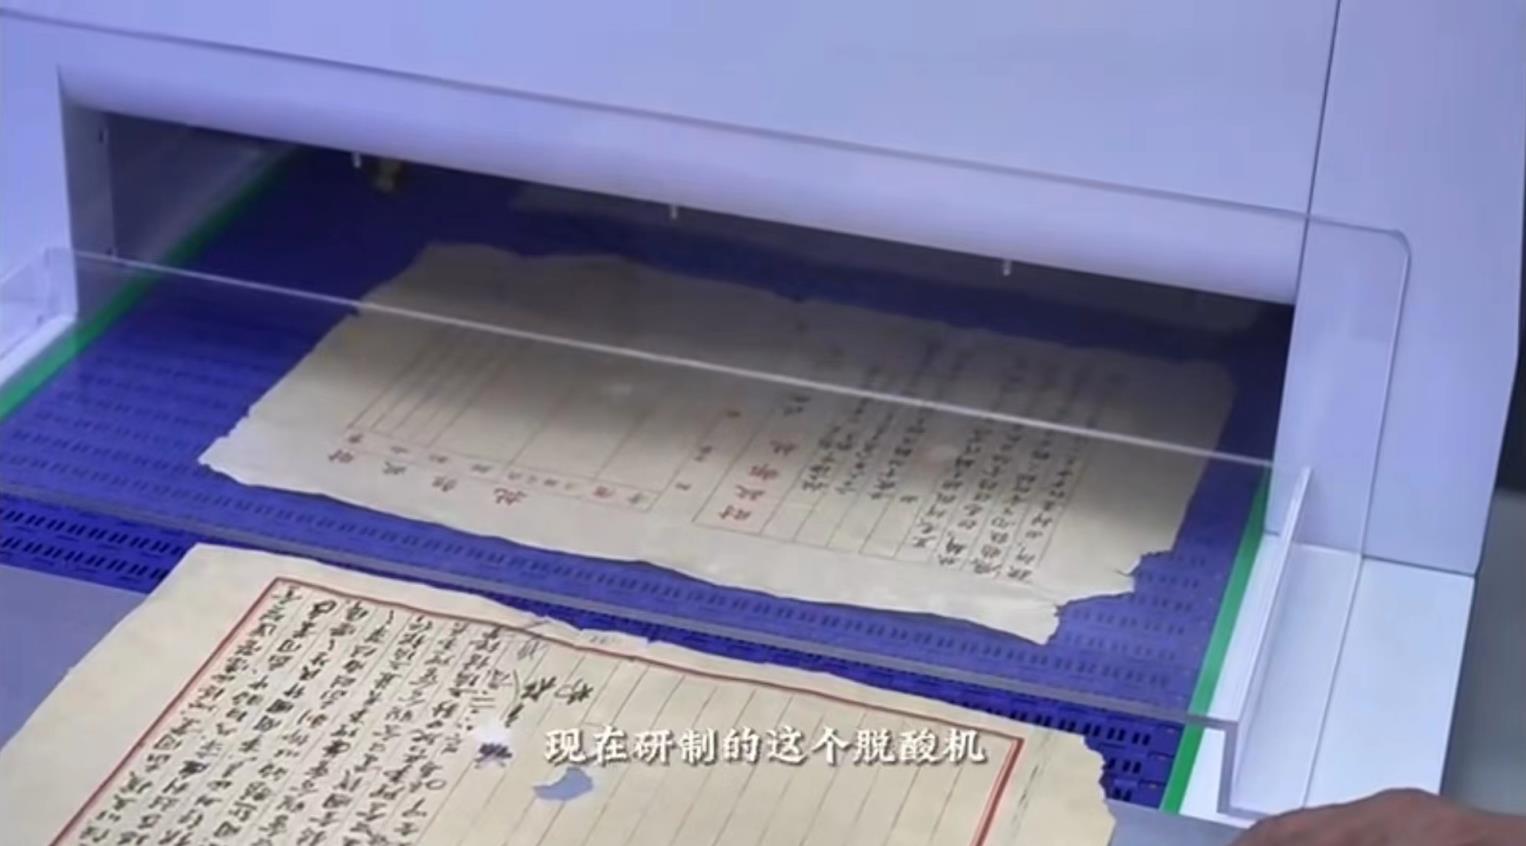 新闻 | 喷雾脱酸机参加上海市档案馆创新发展展示